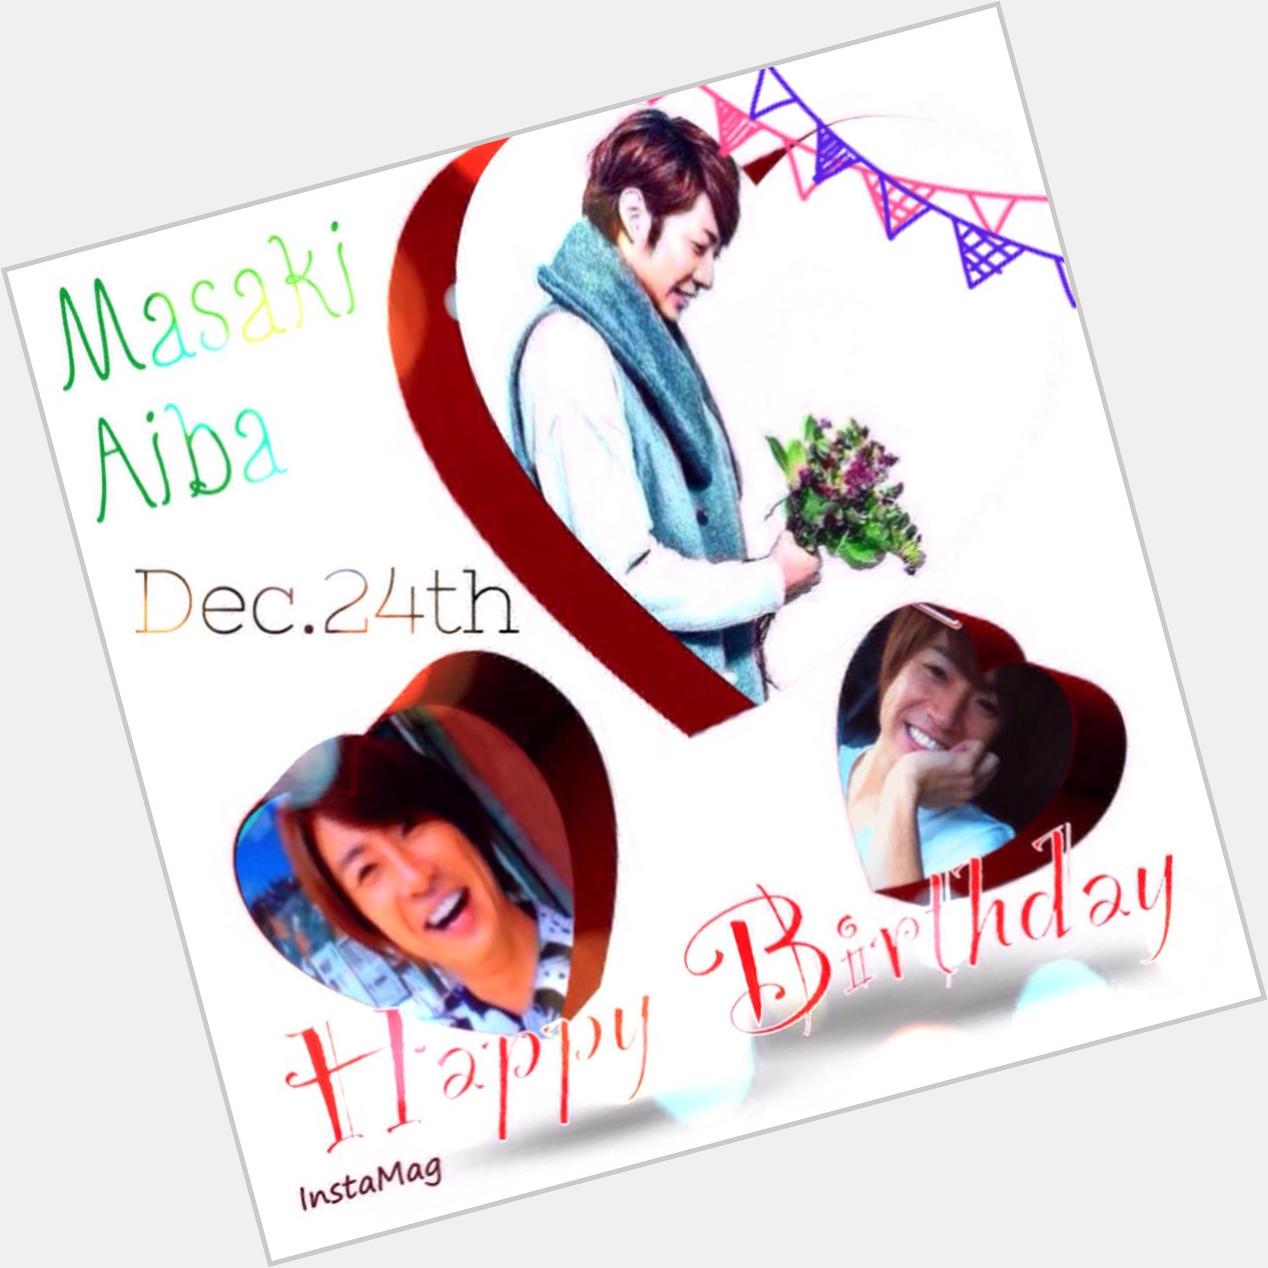  Masaki Aiba Happy Birthday !    1  1           12*24 